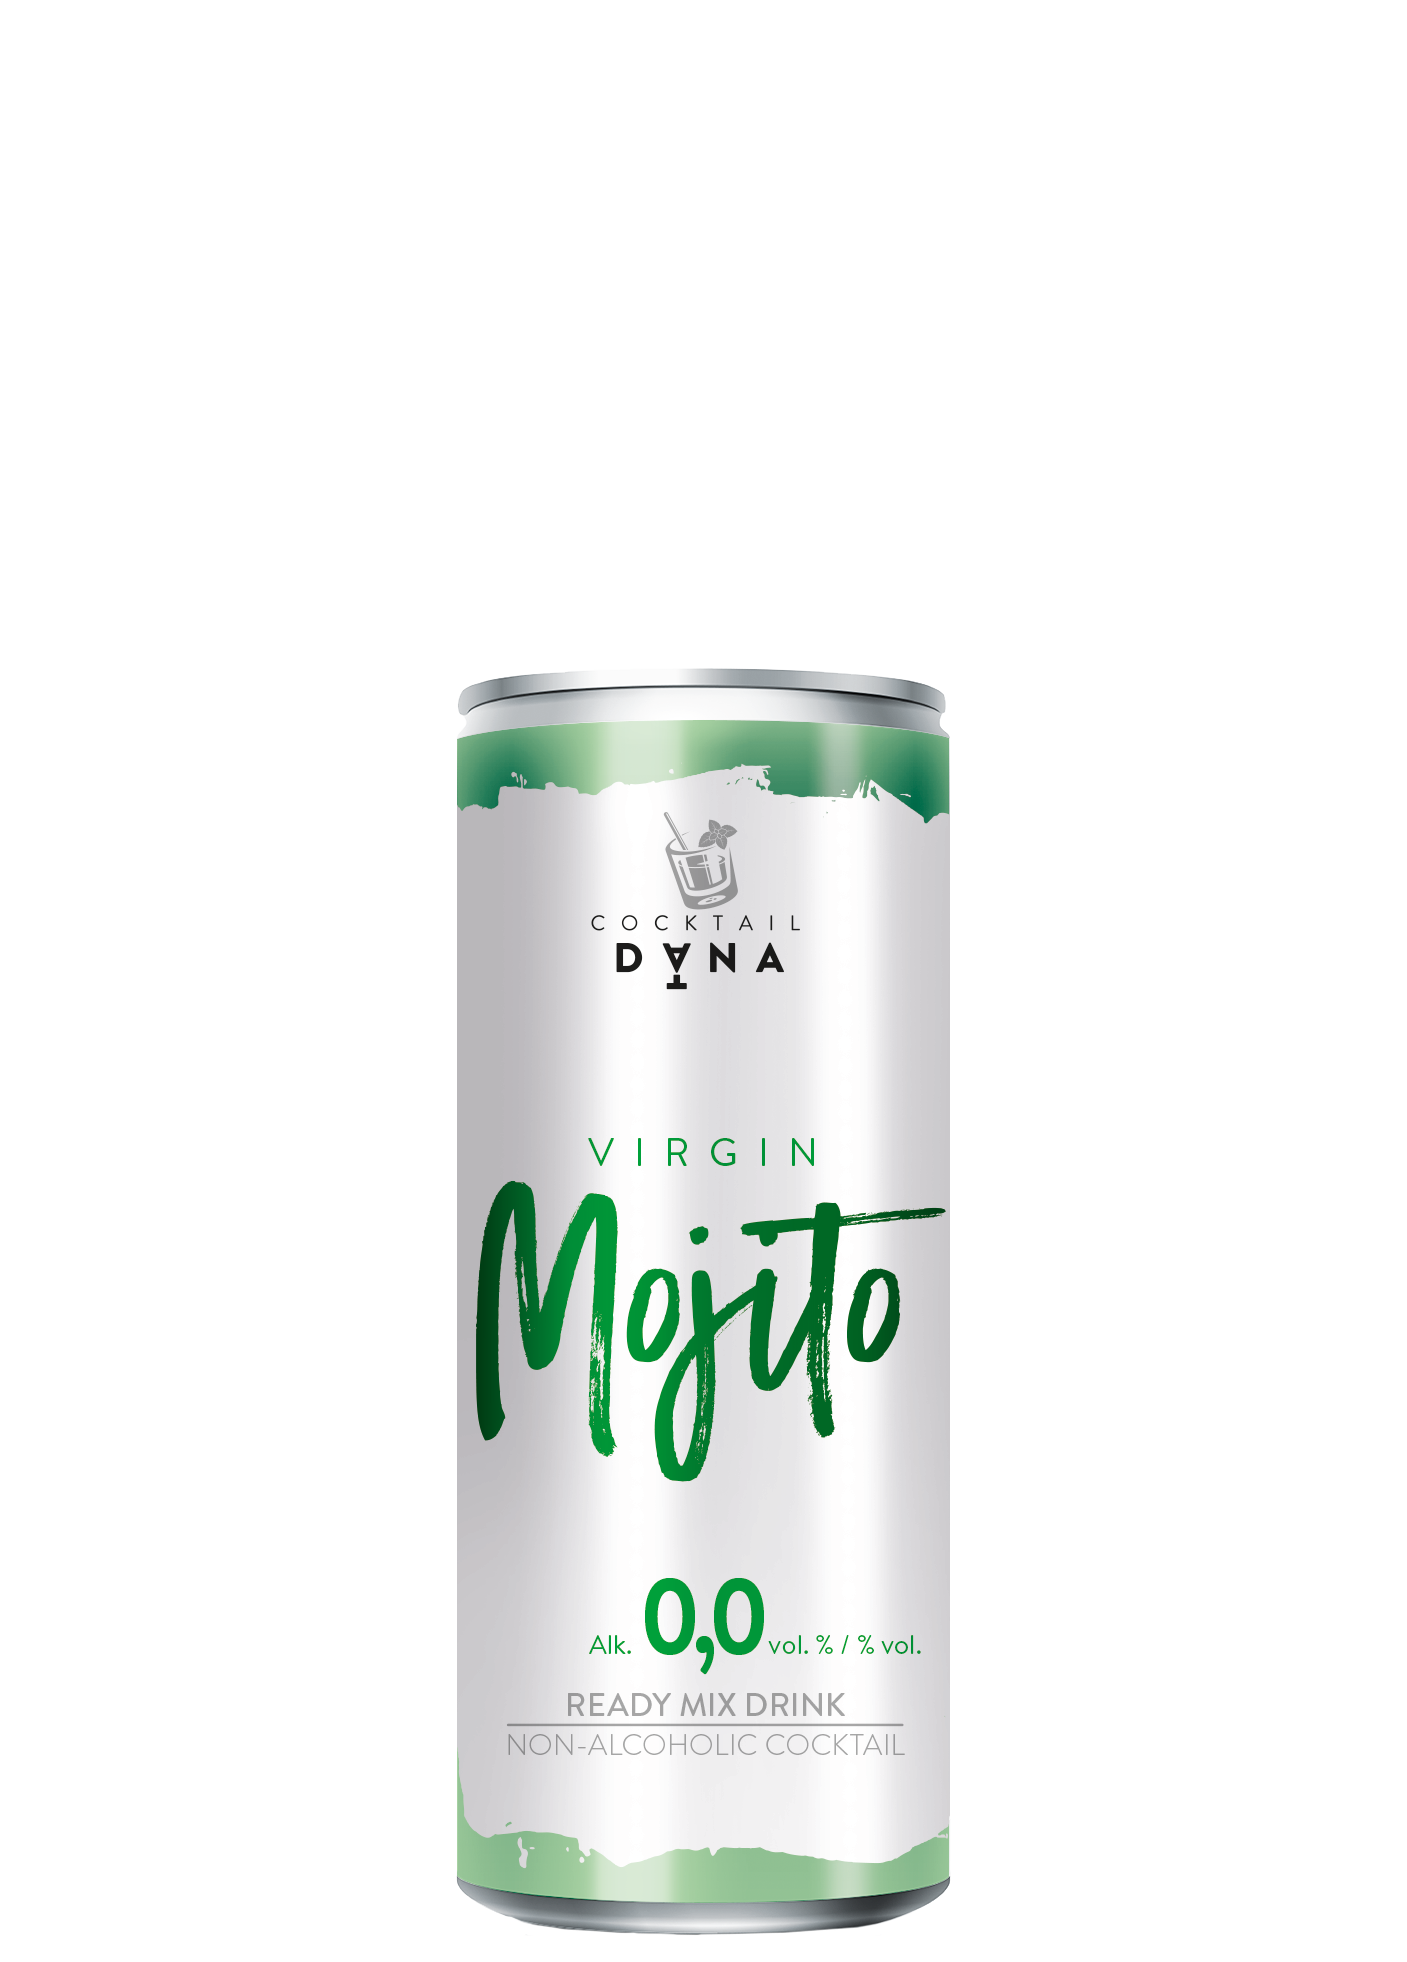 Dana Cocktail Mojito Virgin, alk: 0,0 % vol.